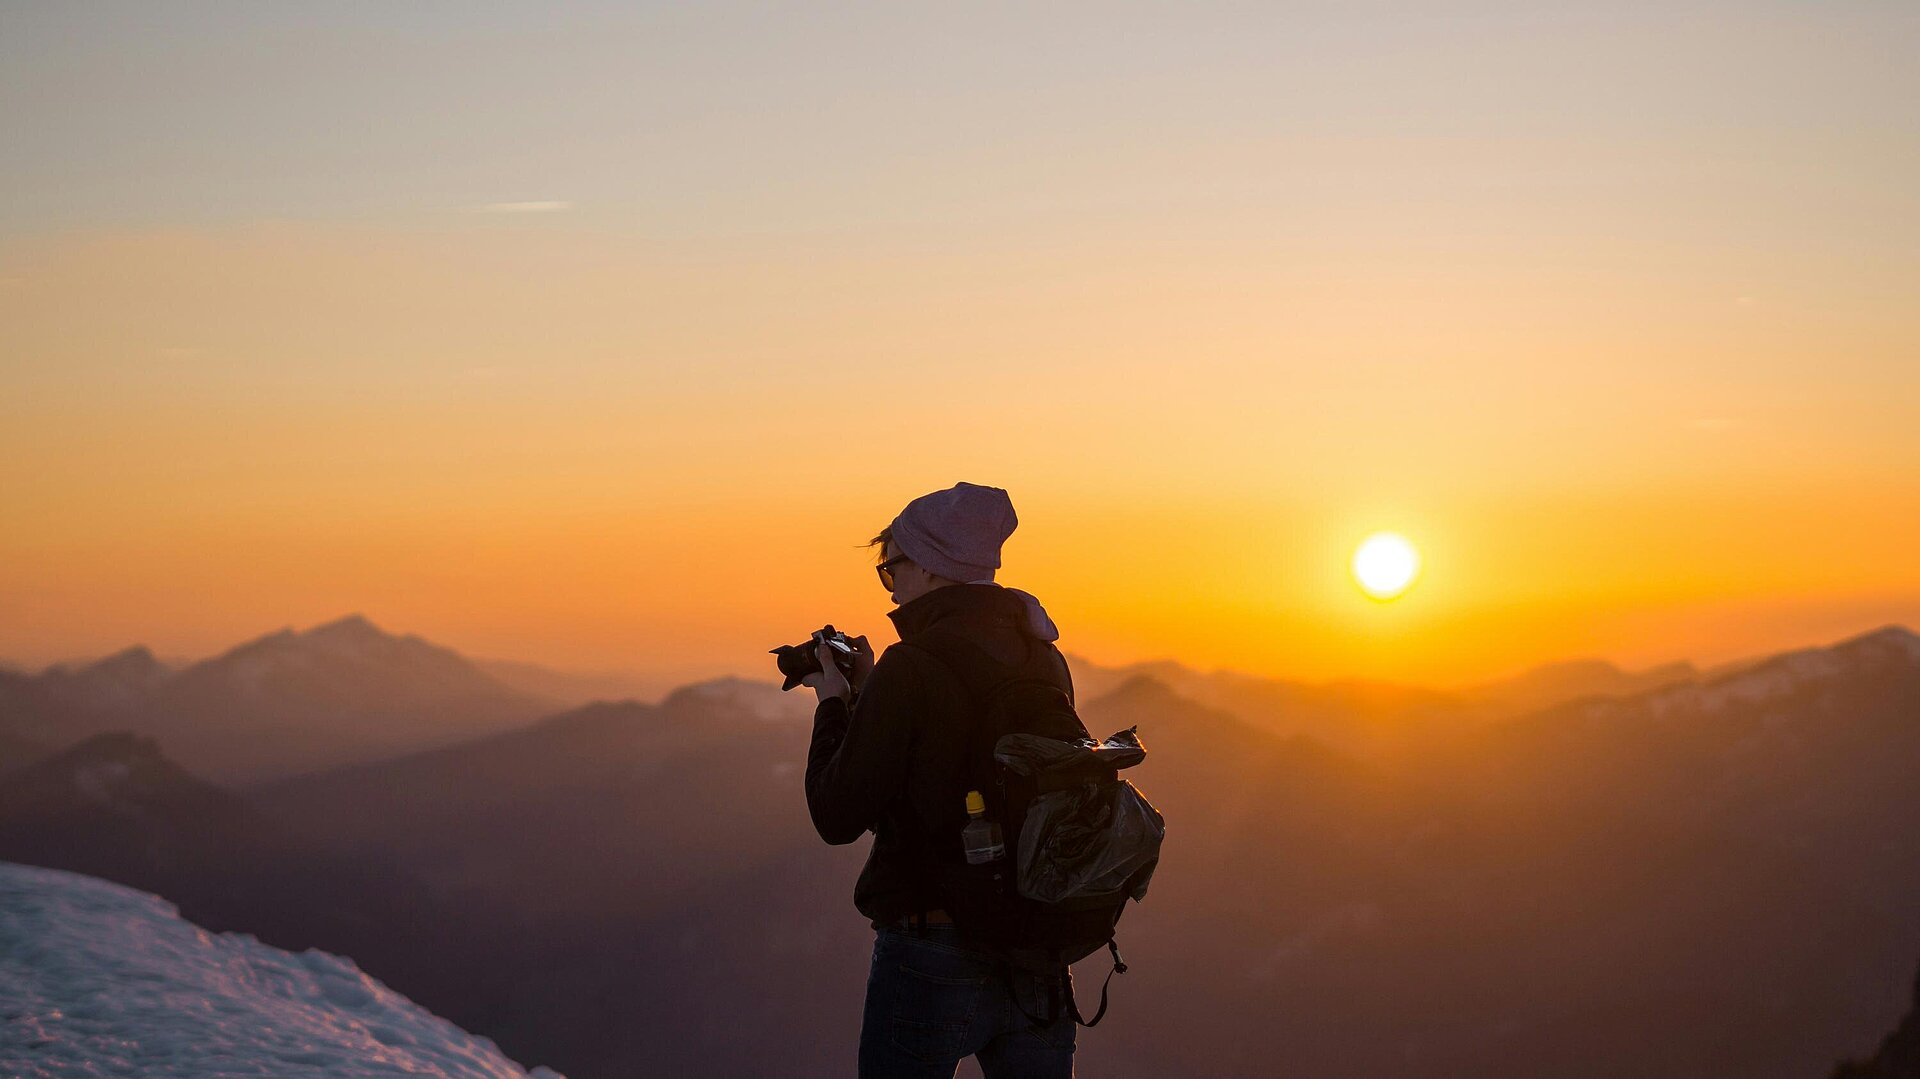 Die Schönheit Bayerns durch die Linse: Fotografie als Mittel zur Wertschätzung der Natur - Fotograf:in in den Alpen bei Sonnenuntergang